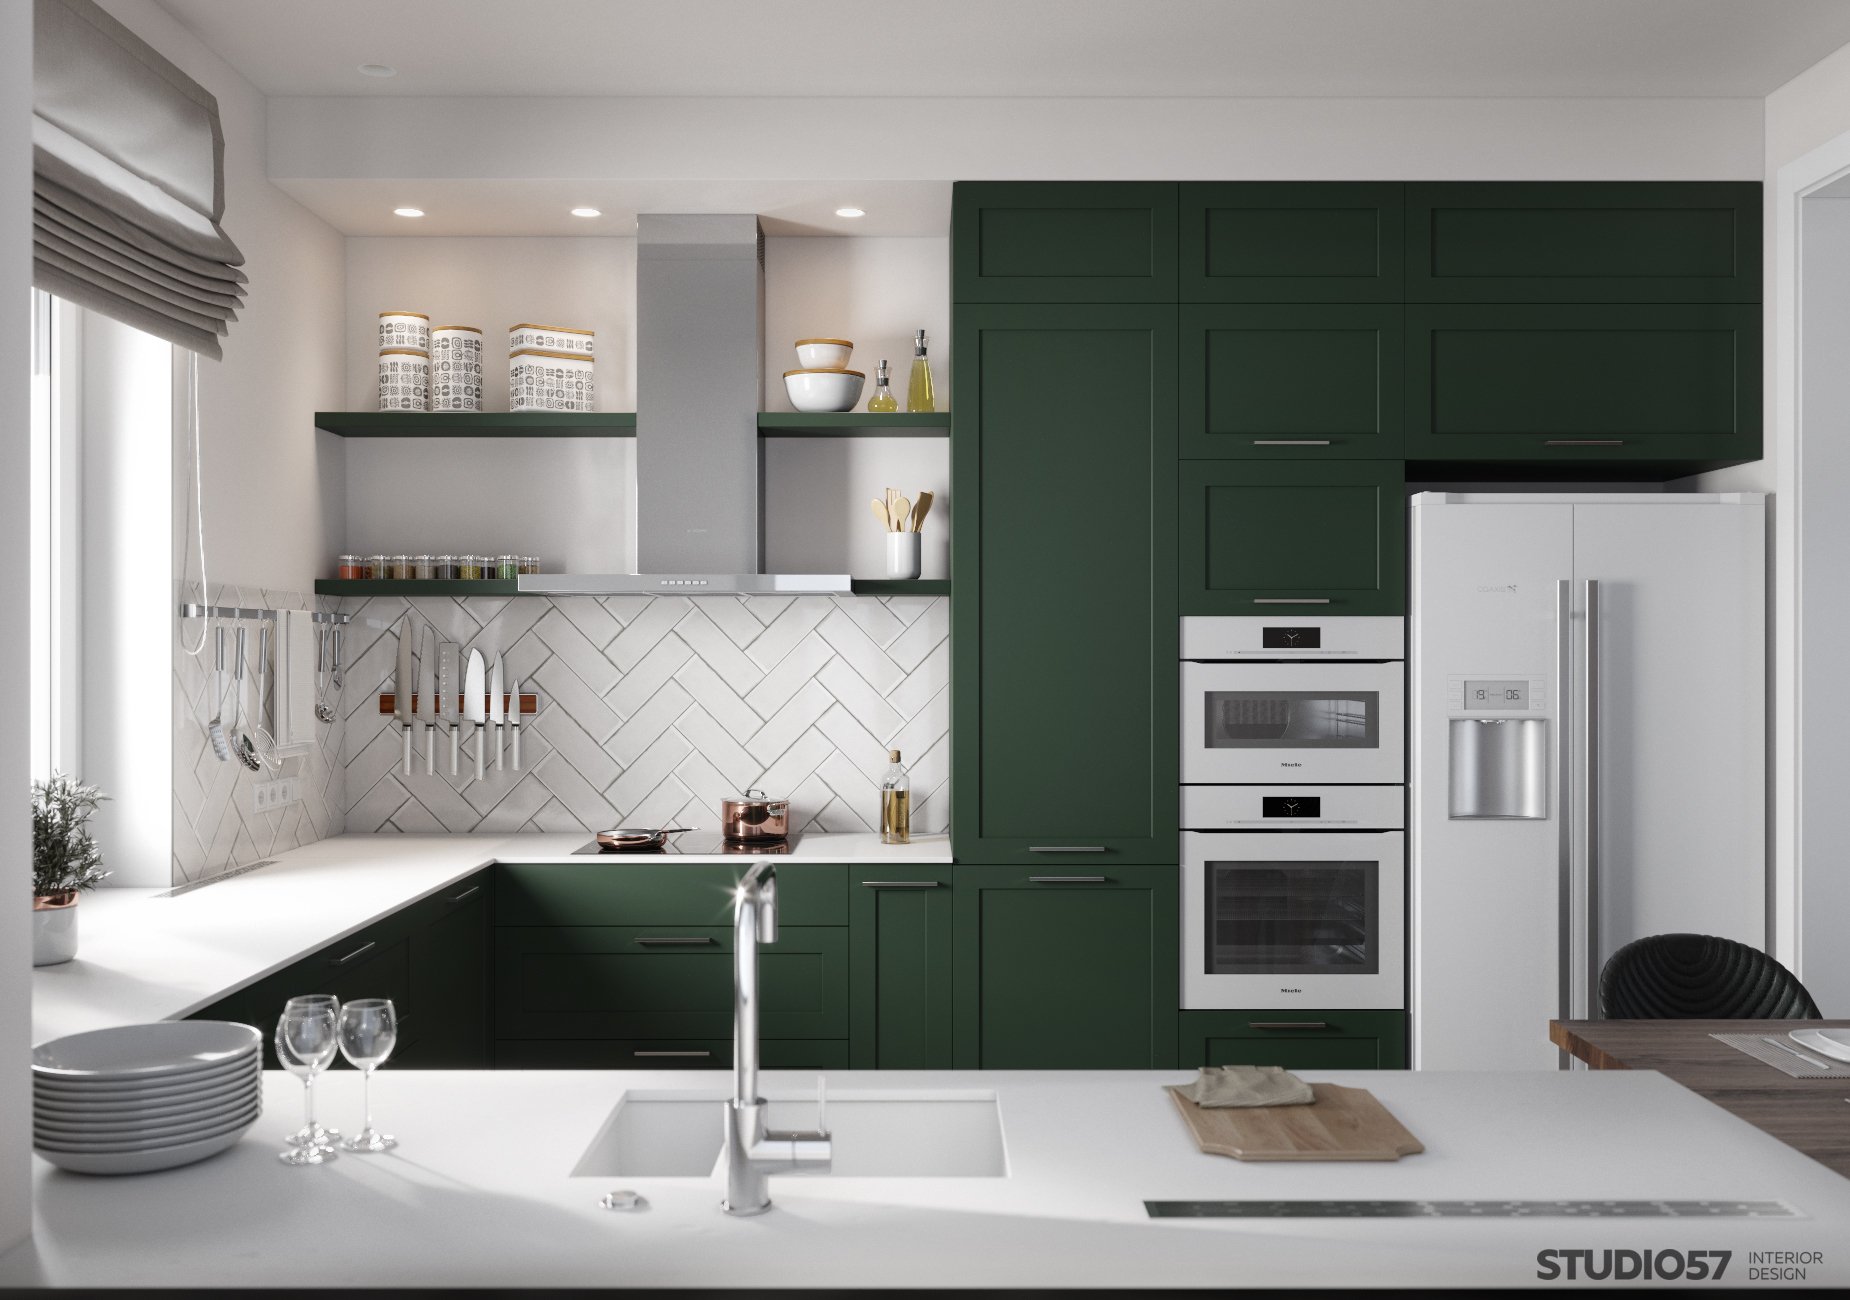 Kitchen interior design in green photo